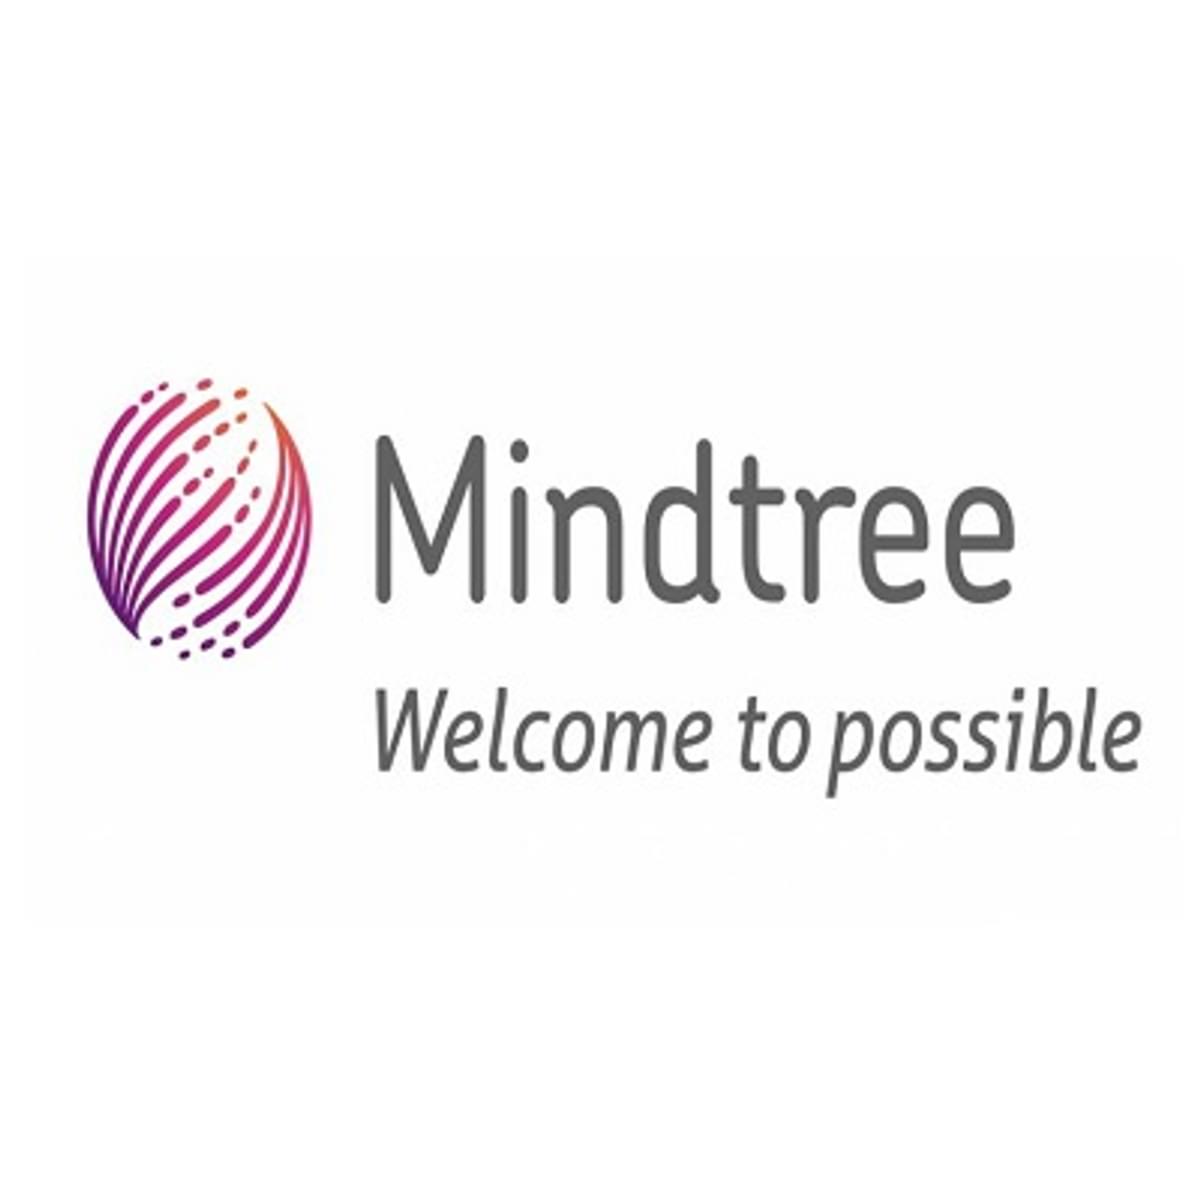 Mindtree opent nieuw Europees hoofdkantoor in Londen image